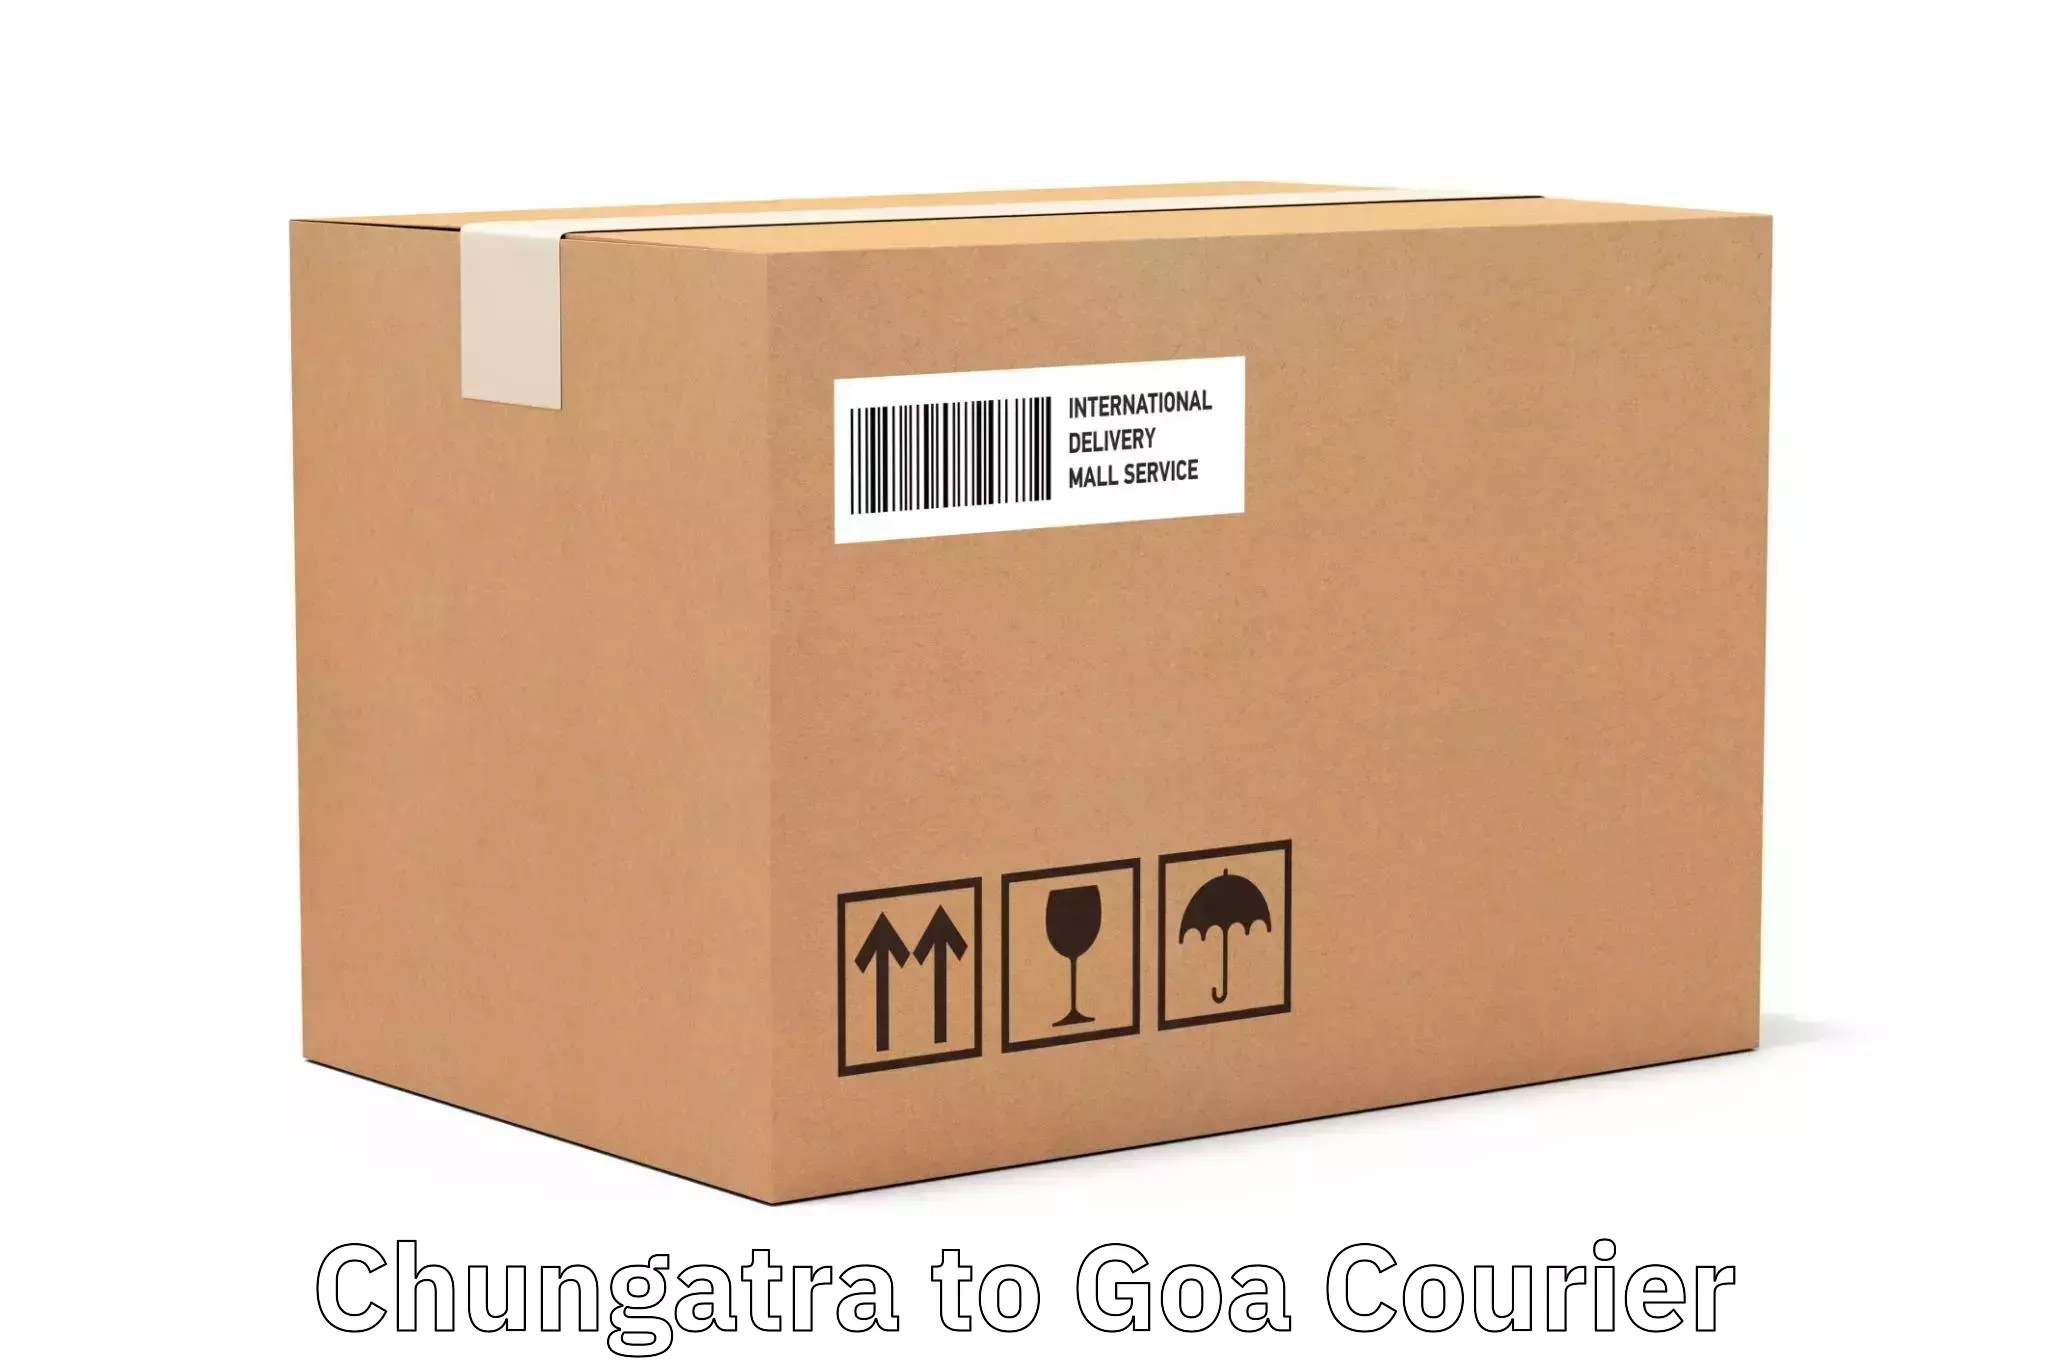 Local delivery service Chungatra to Vasco da Gama